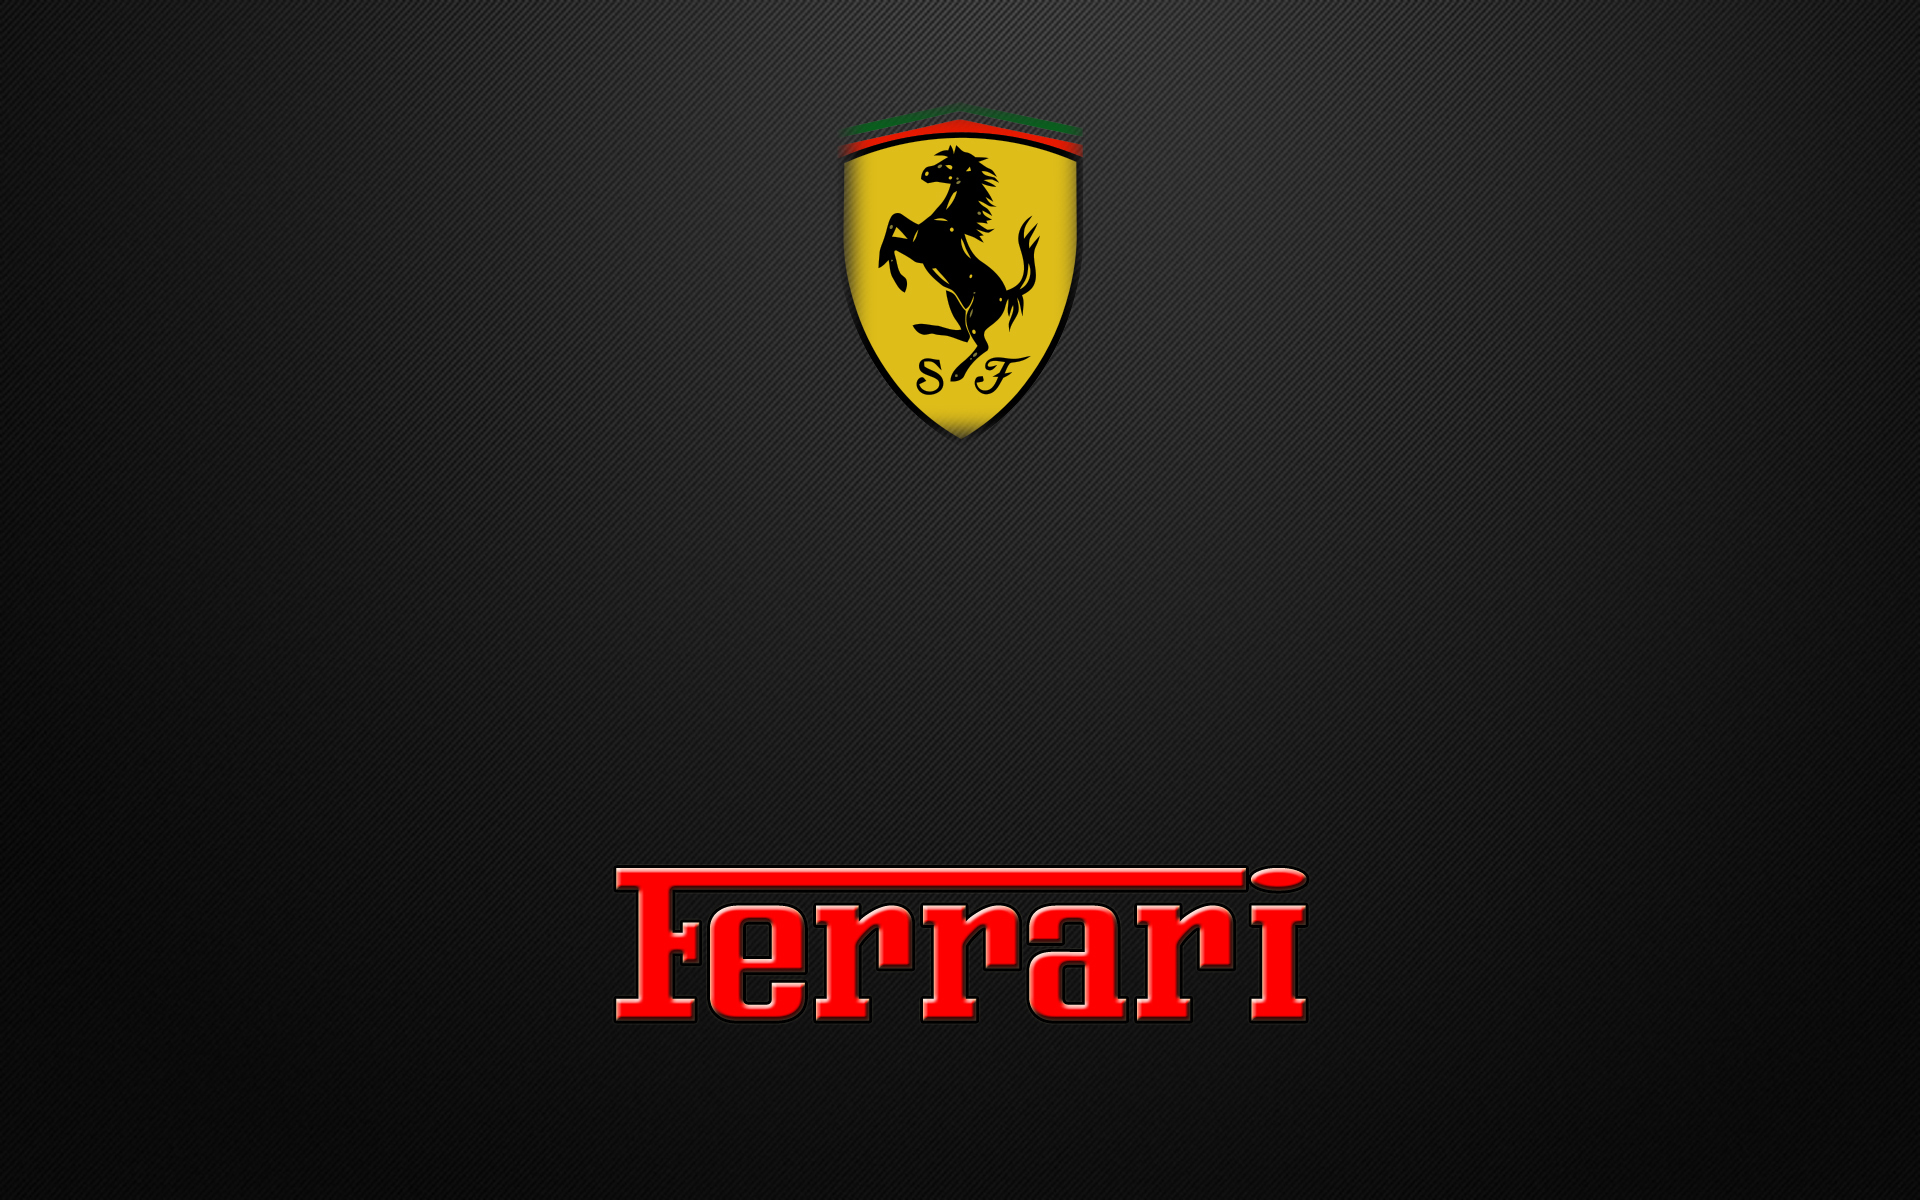 Saiba mais sobre a história da Ferrari